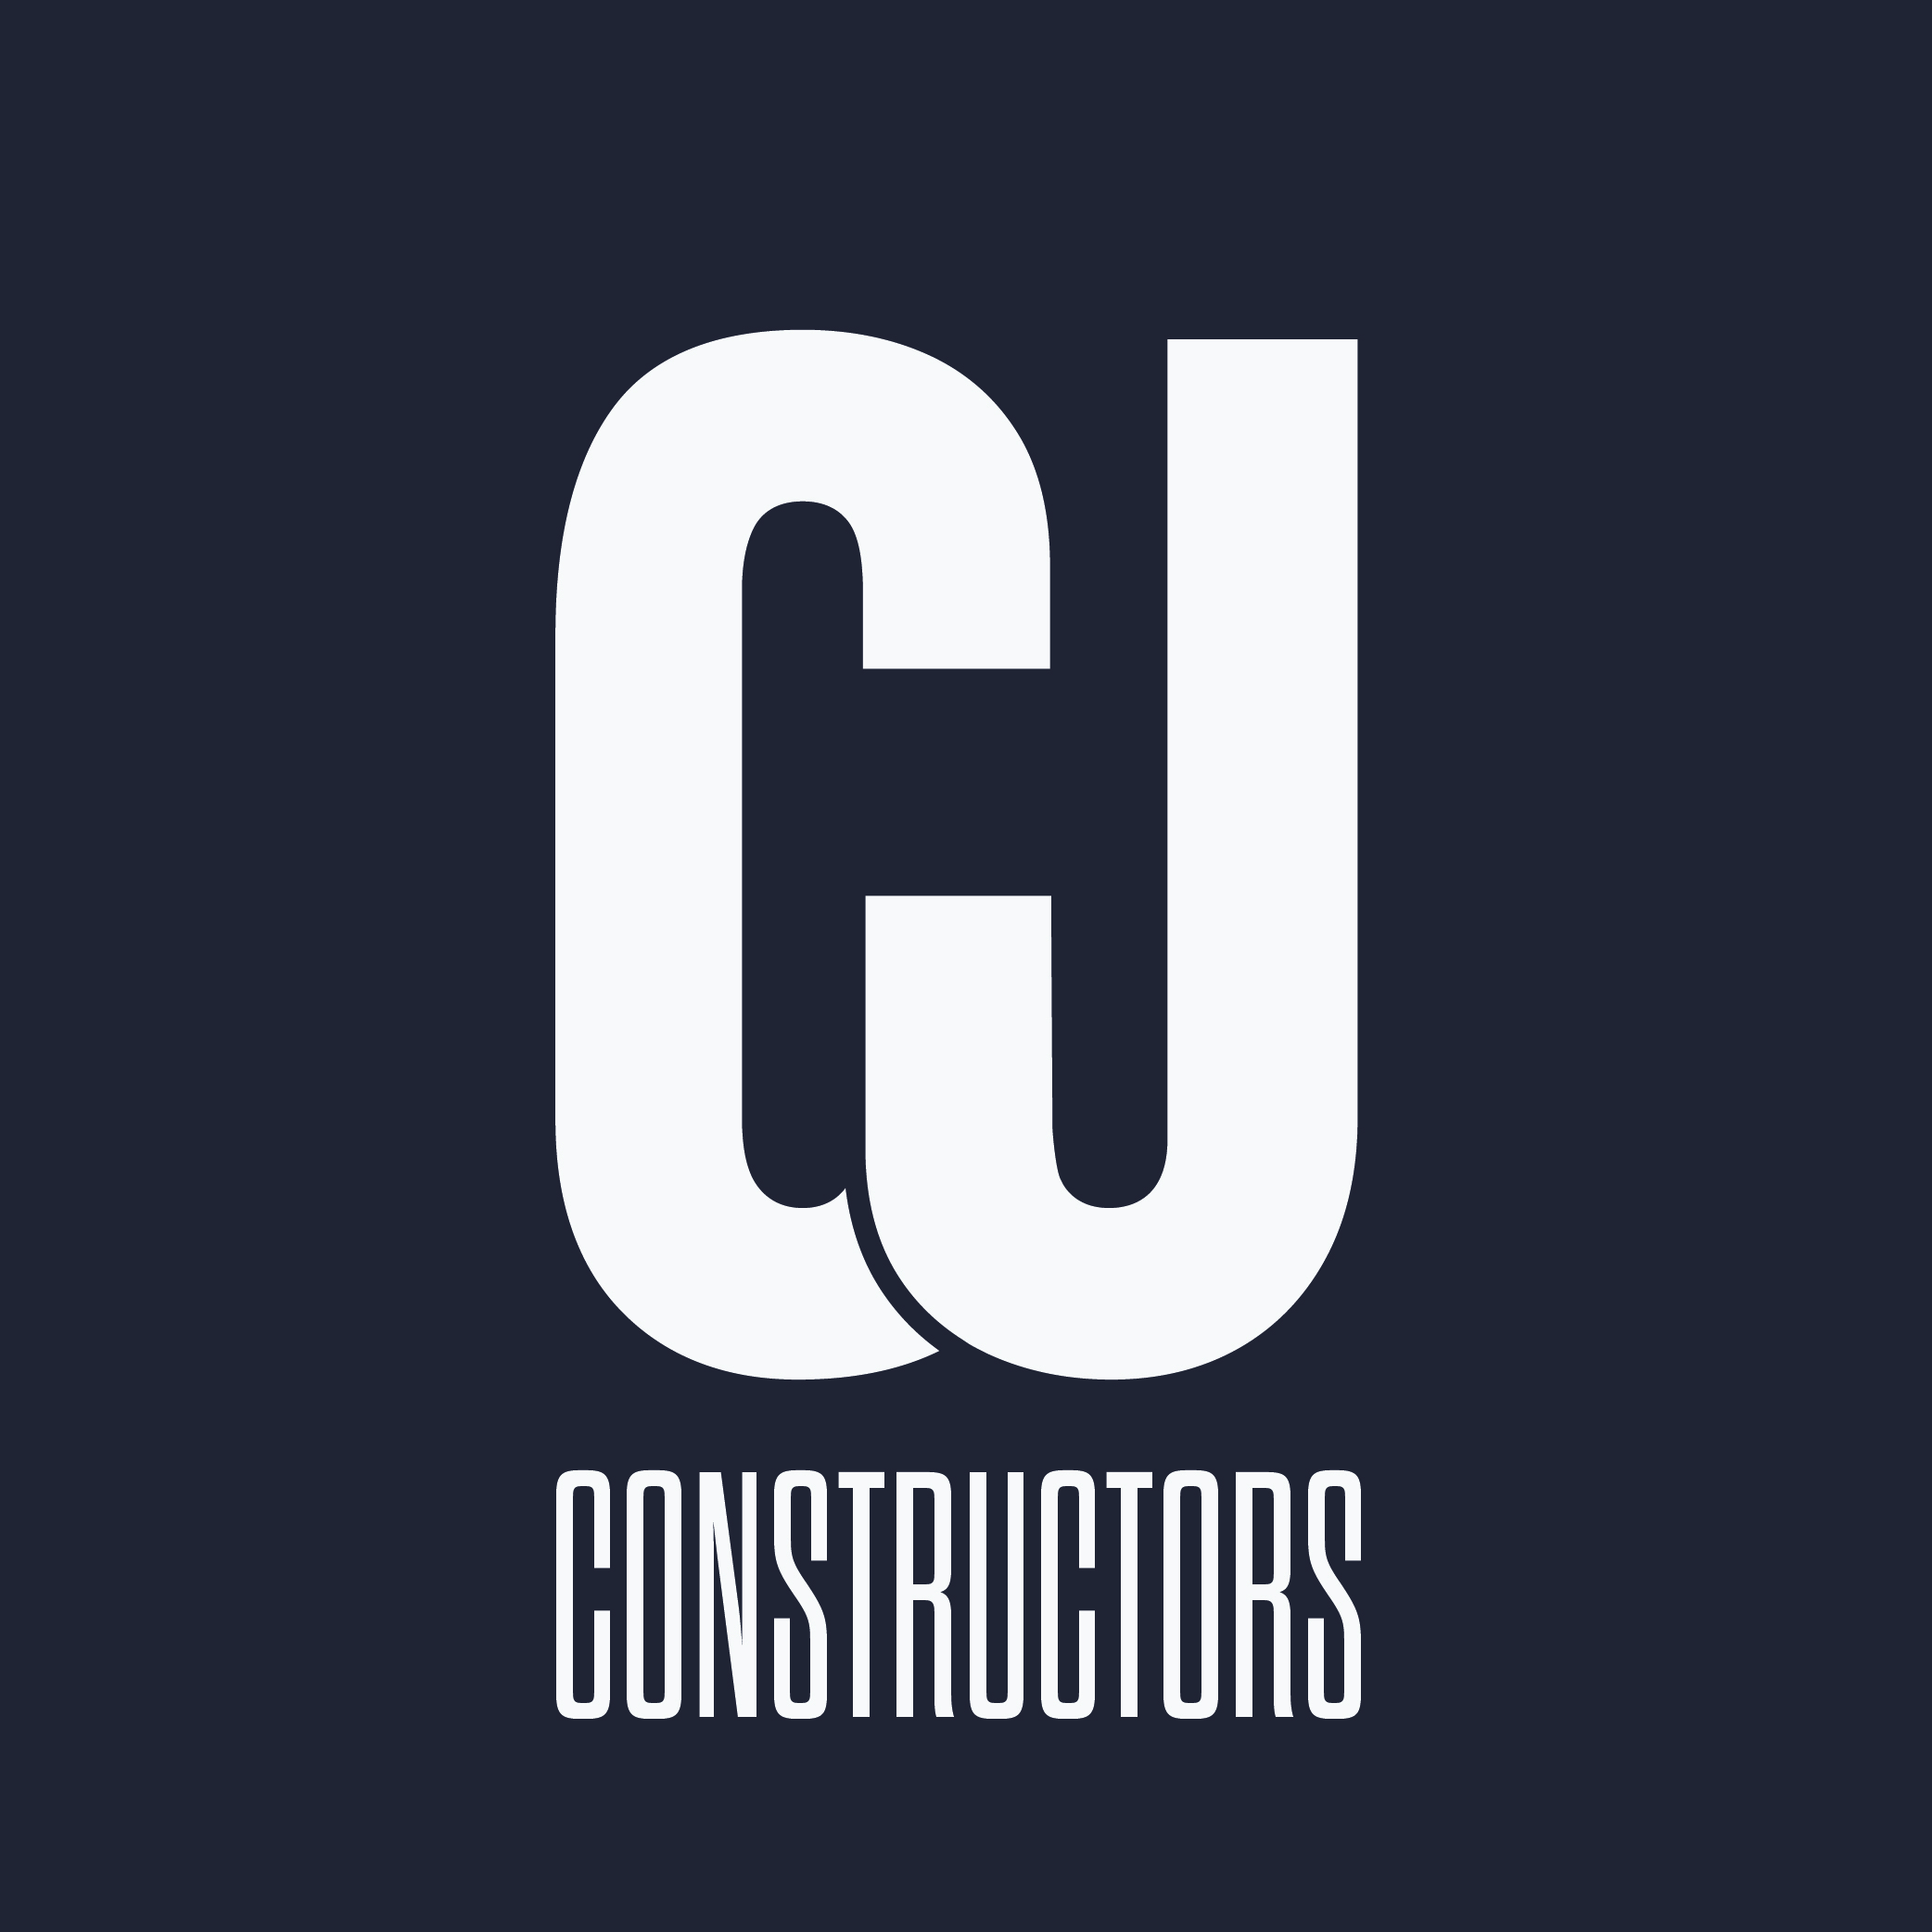 CJ Constructors's logo